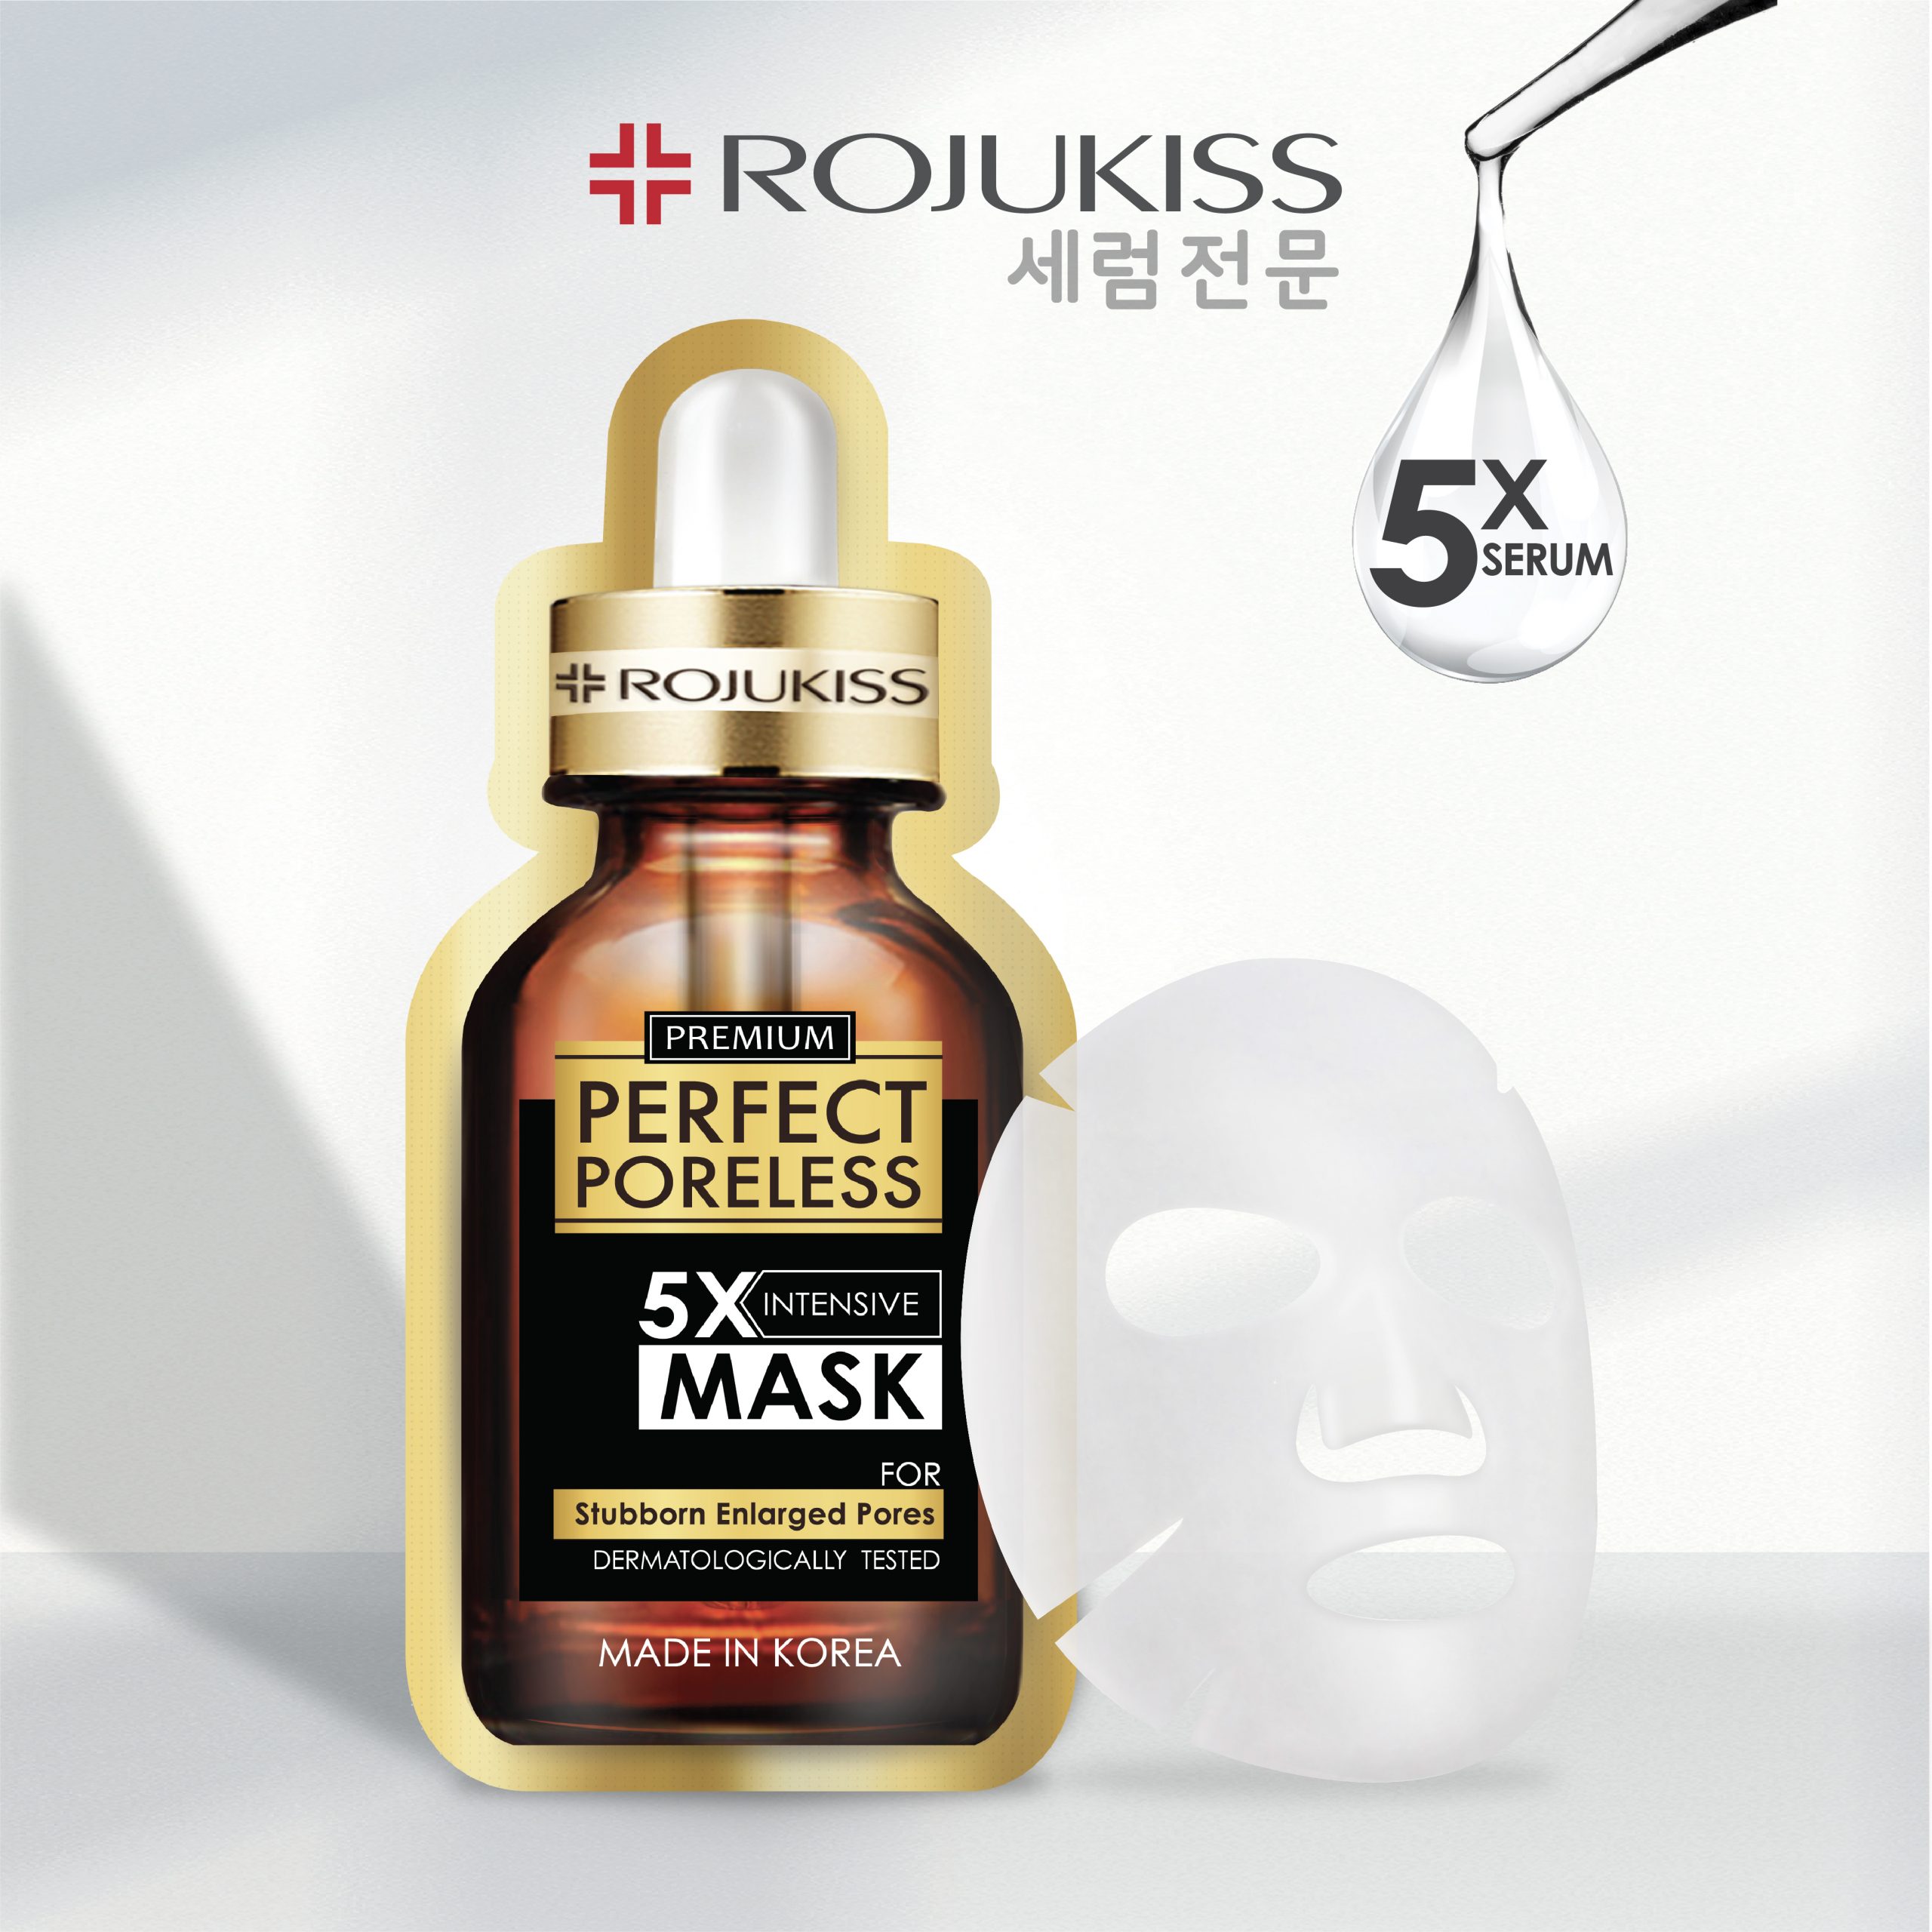 ซื้อ1แถม1] โรจูคิส เพอร์เฟค พอร์เลส 5 เอ็กซ์ มาส์ก Rojukiss Perfect  Poreless 5X Mask - Rojukiss